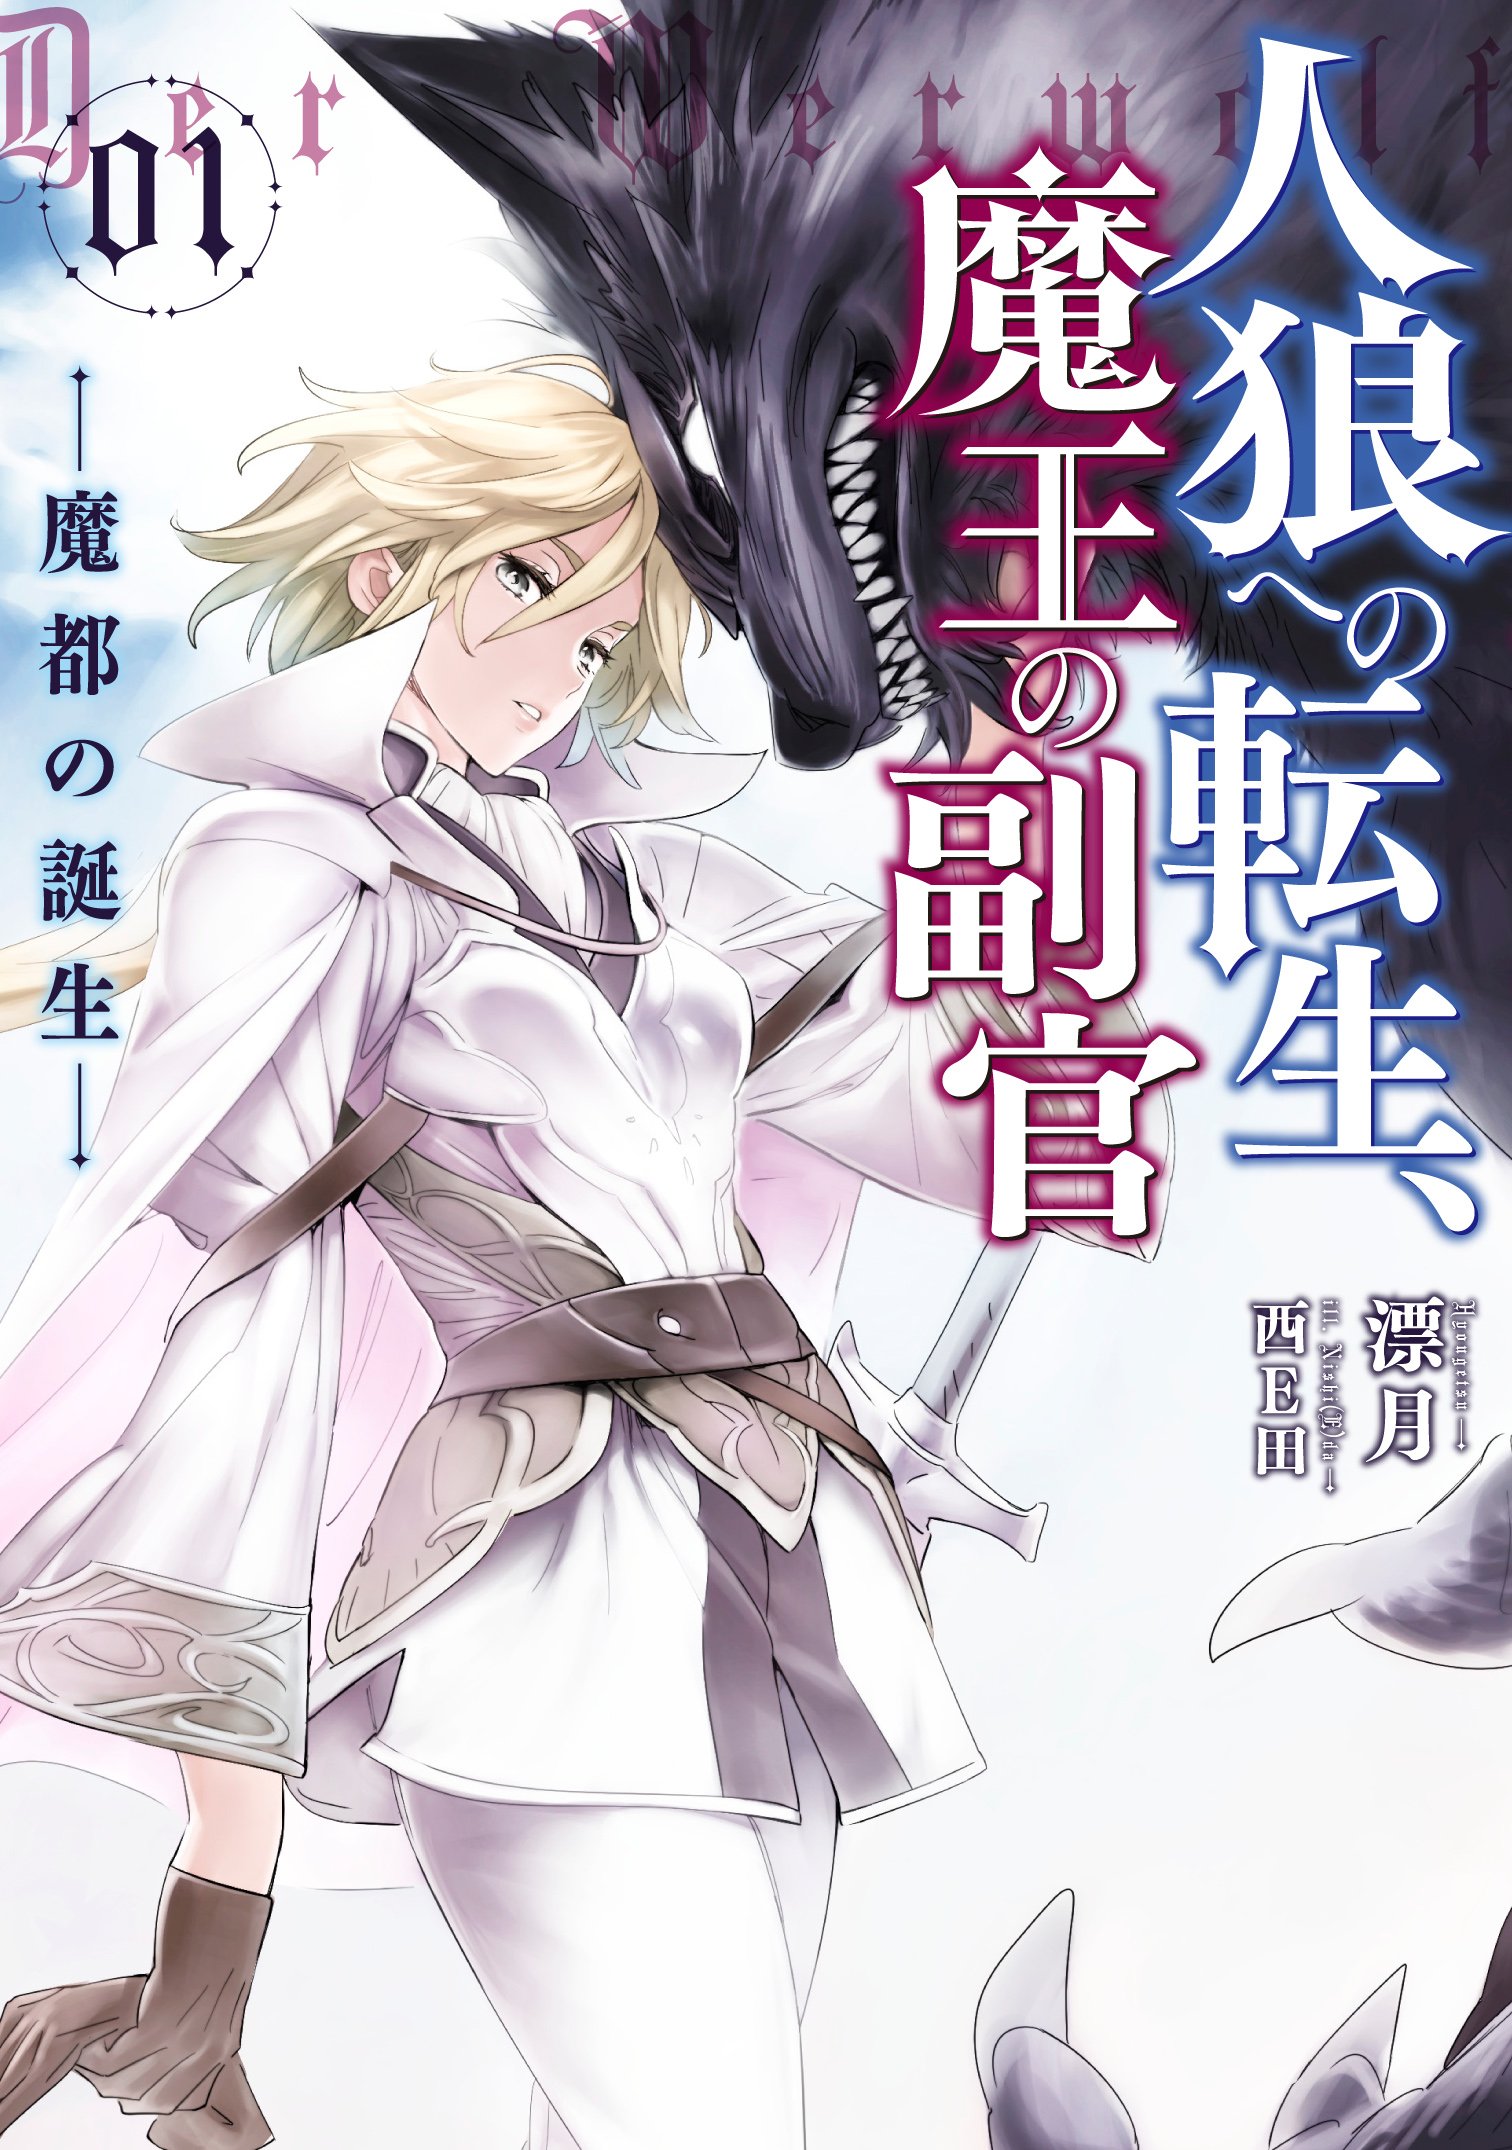 Tensei Shitara Slime Datta Ken (LN) - Novel Updates